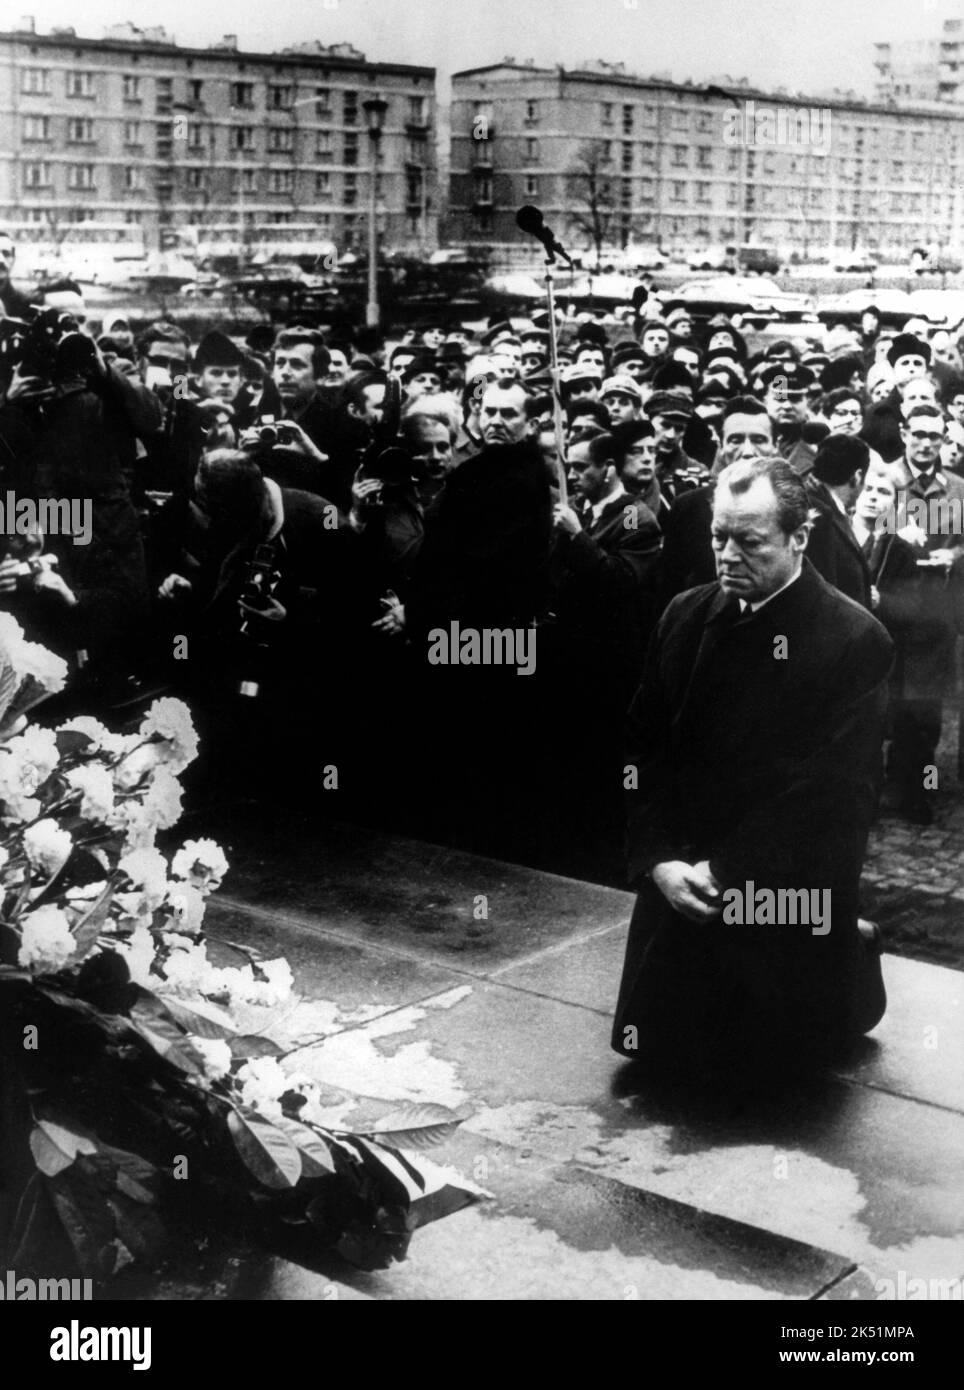 ARIV - Bundeskanzler Willy Brandt kniet am 07.12.1970 vor dem Mahnmal im einstigen jüdischen Ghetto in Warschau (Polen), das den Helden des Ghetto-Aufstandes vom April 1943 gemet vedist. Foto: dpa (zu dpa-Themenpaket «100 Jahre Willy Brandt» vom 16.12.2013) ++ Foto Stock